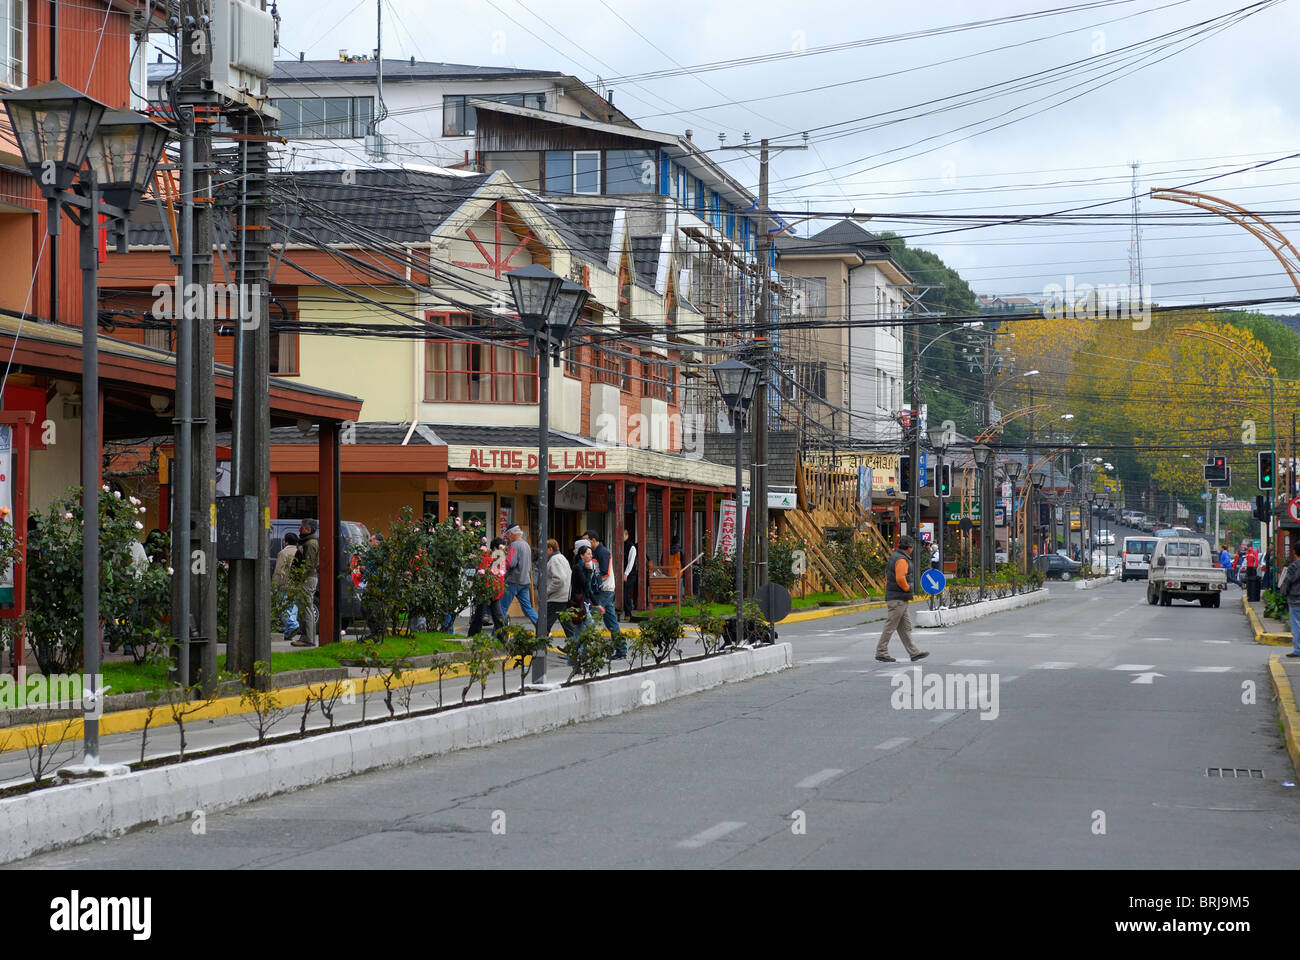 Rues de Puerto Varas, Patagonie Chilienne ville de region de los Lagos, Chile Banque D'Images